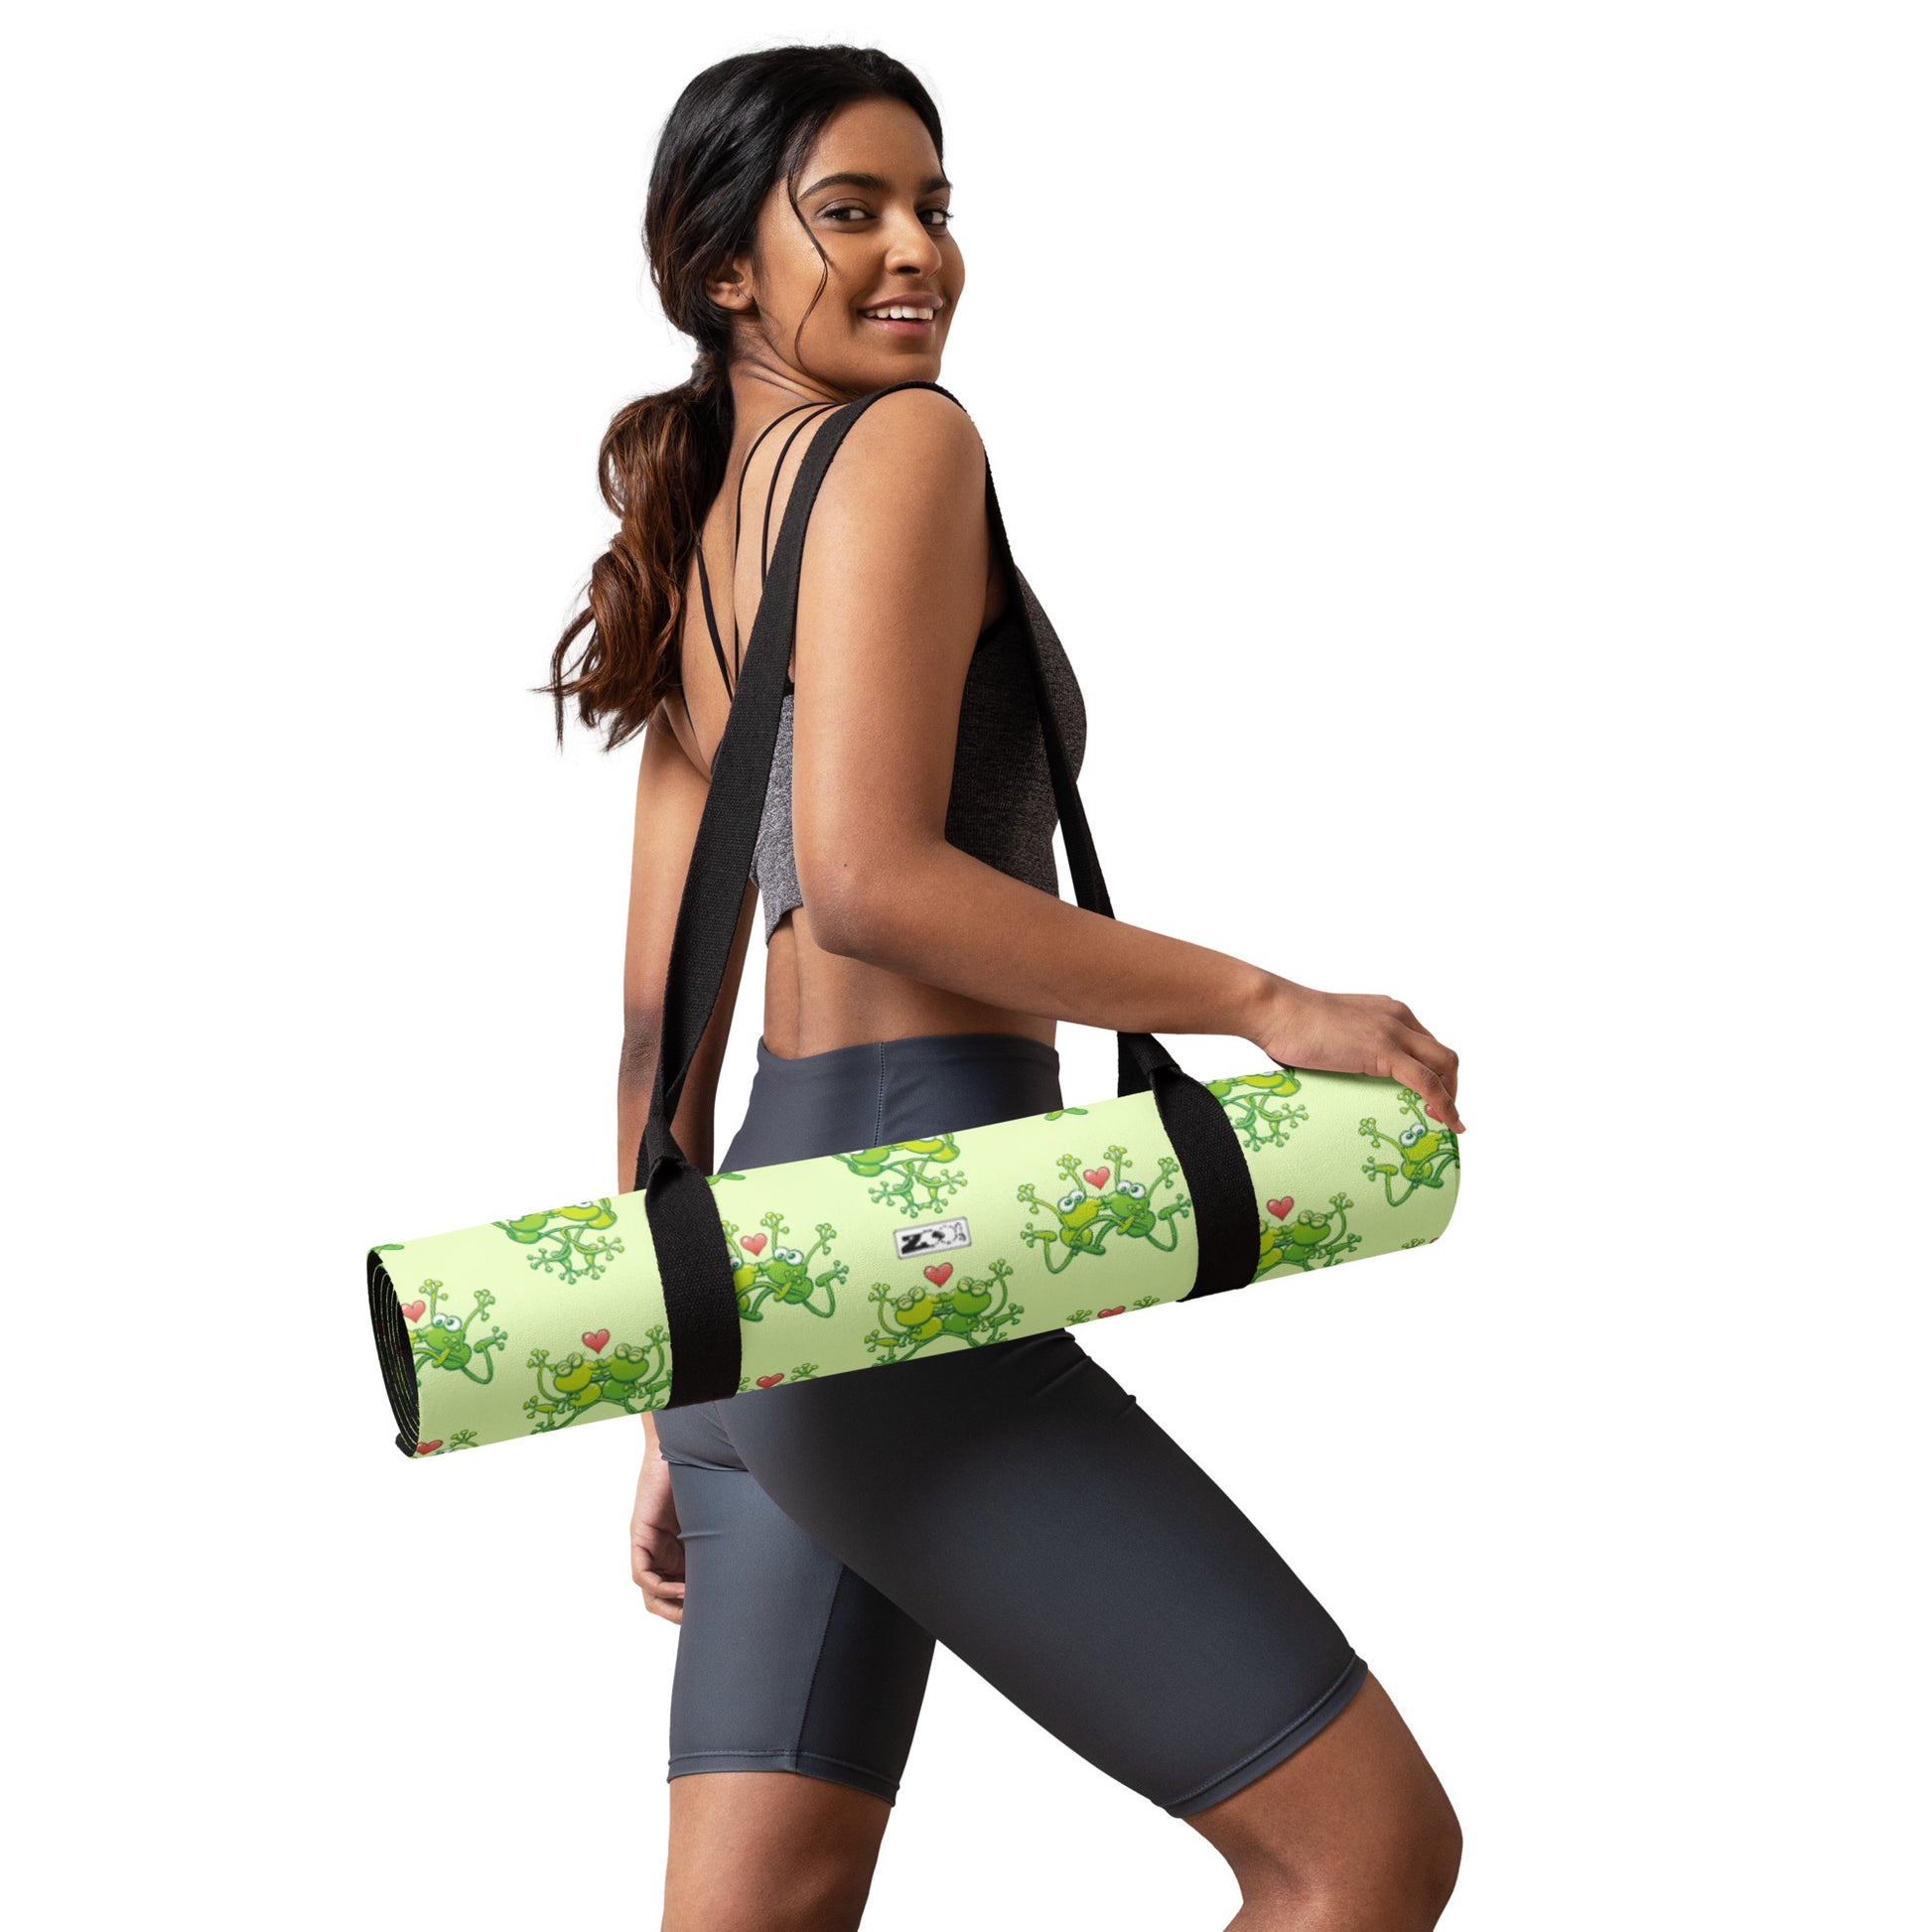 Custom Yoga Mat Carrying Bag